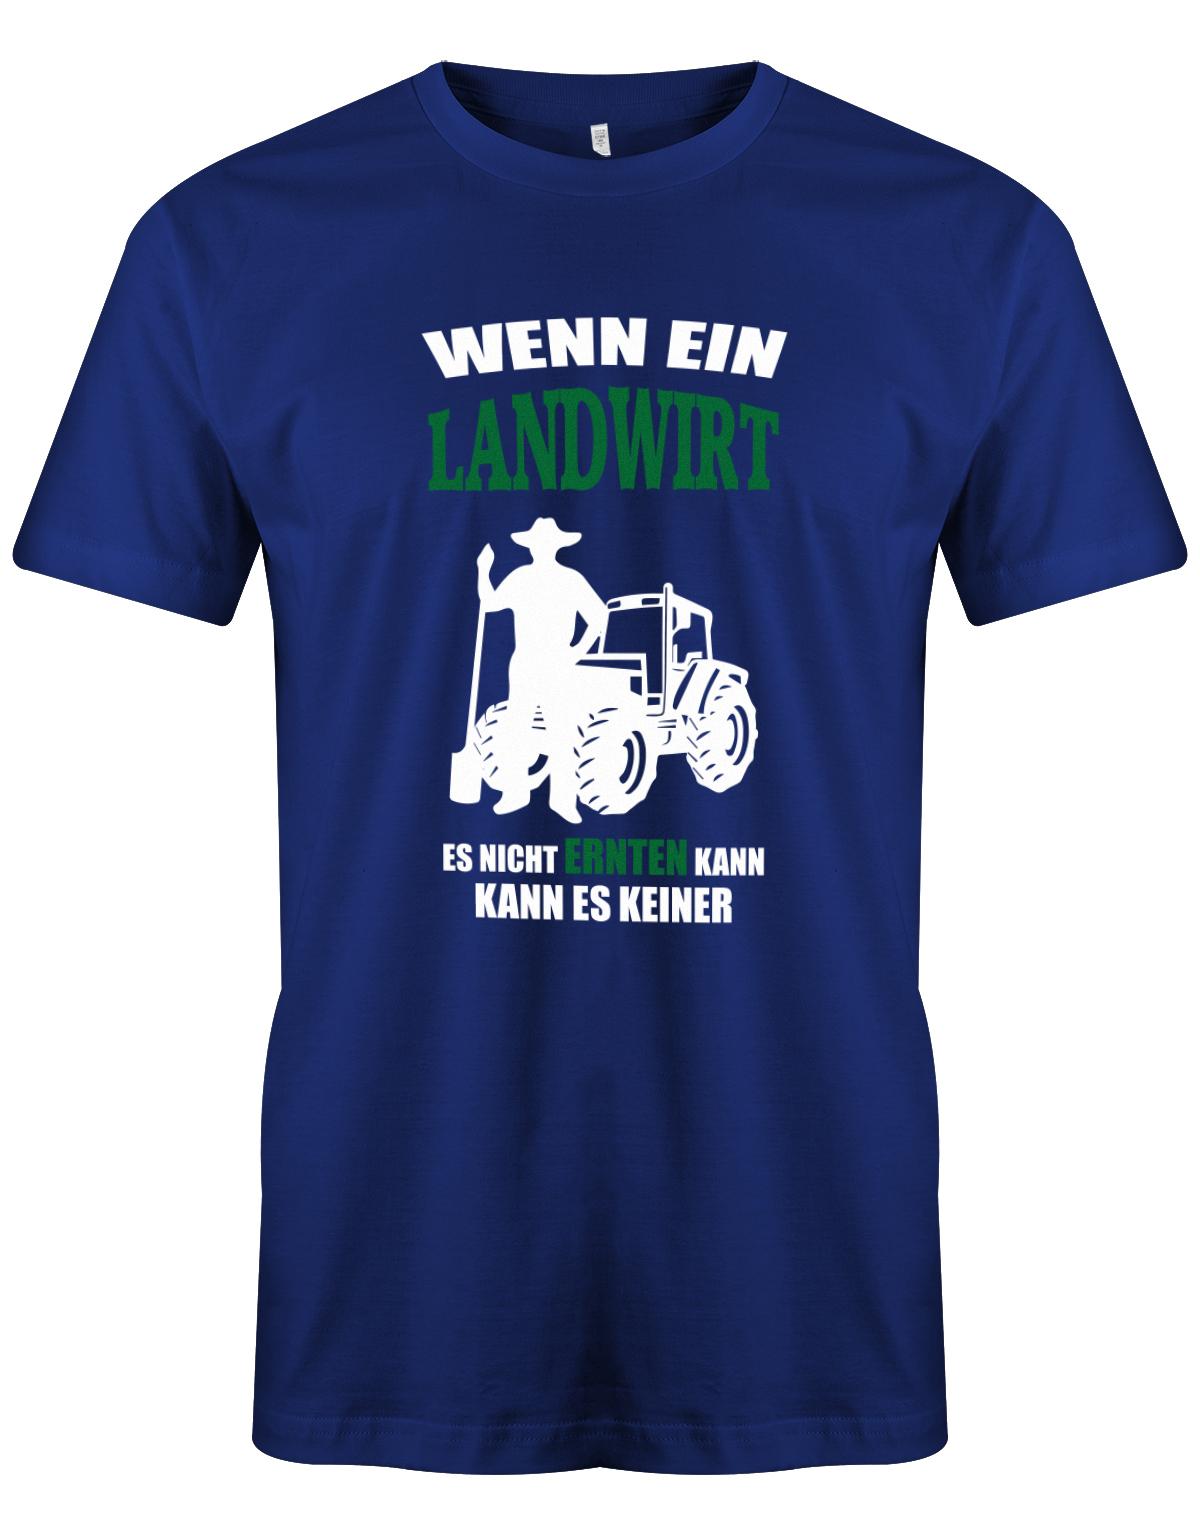 Landwirtschaft Shirt Männer - Wenn ein Landwirt es nicht ernten kann. Kann es keiner Royalblau